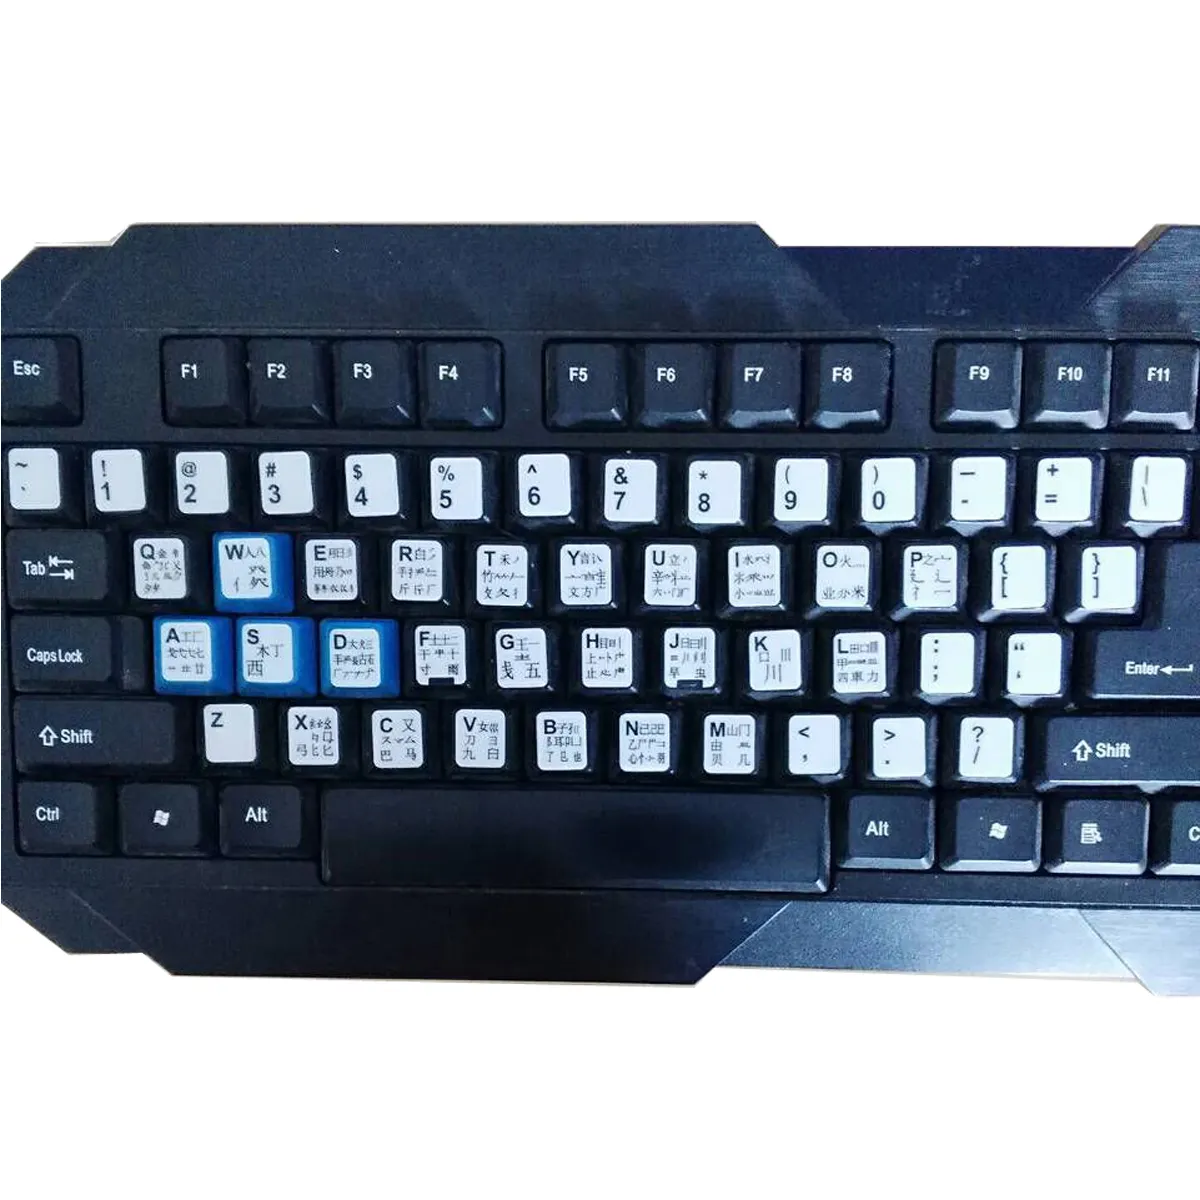 Etiqueta engomada universal del teclado para HP Dell Laptop teclado vinilo piel árabe ruso francés italiano español Idioma